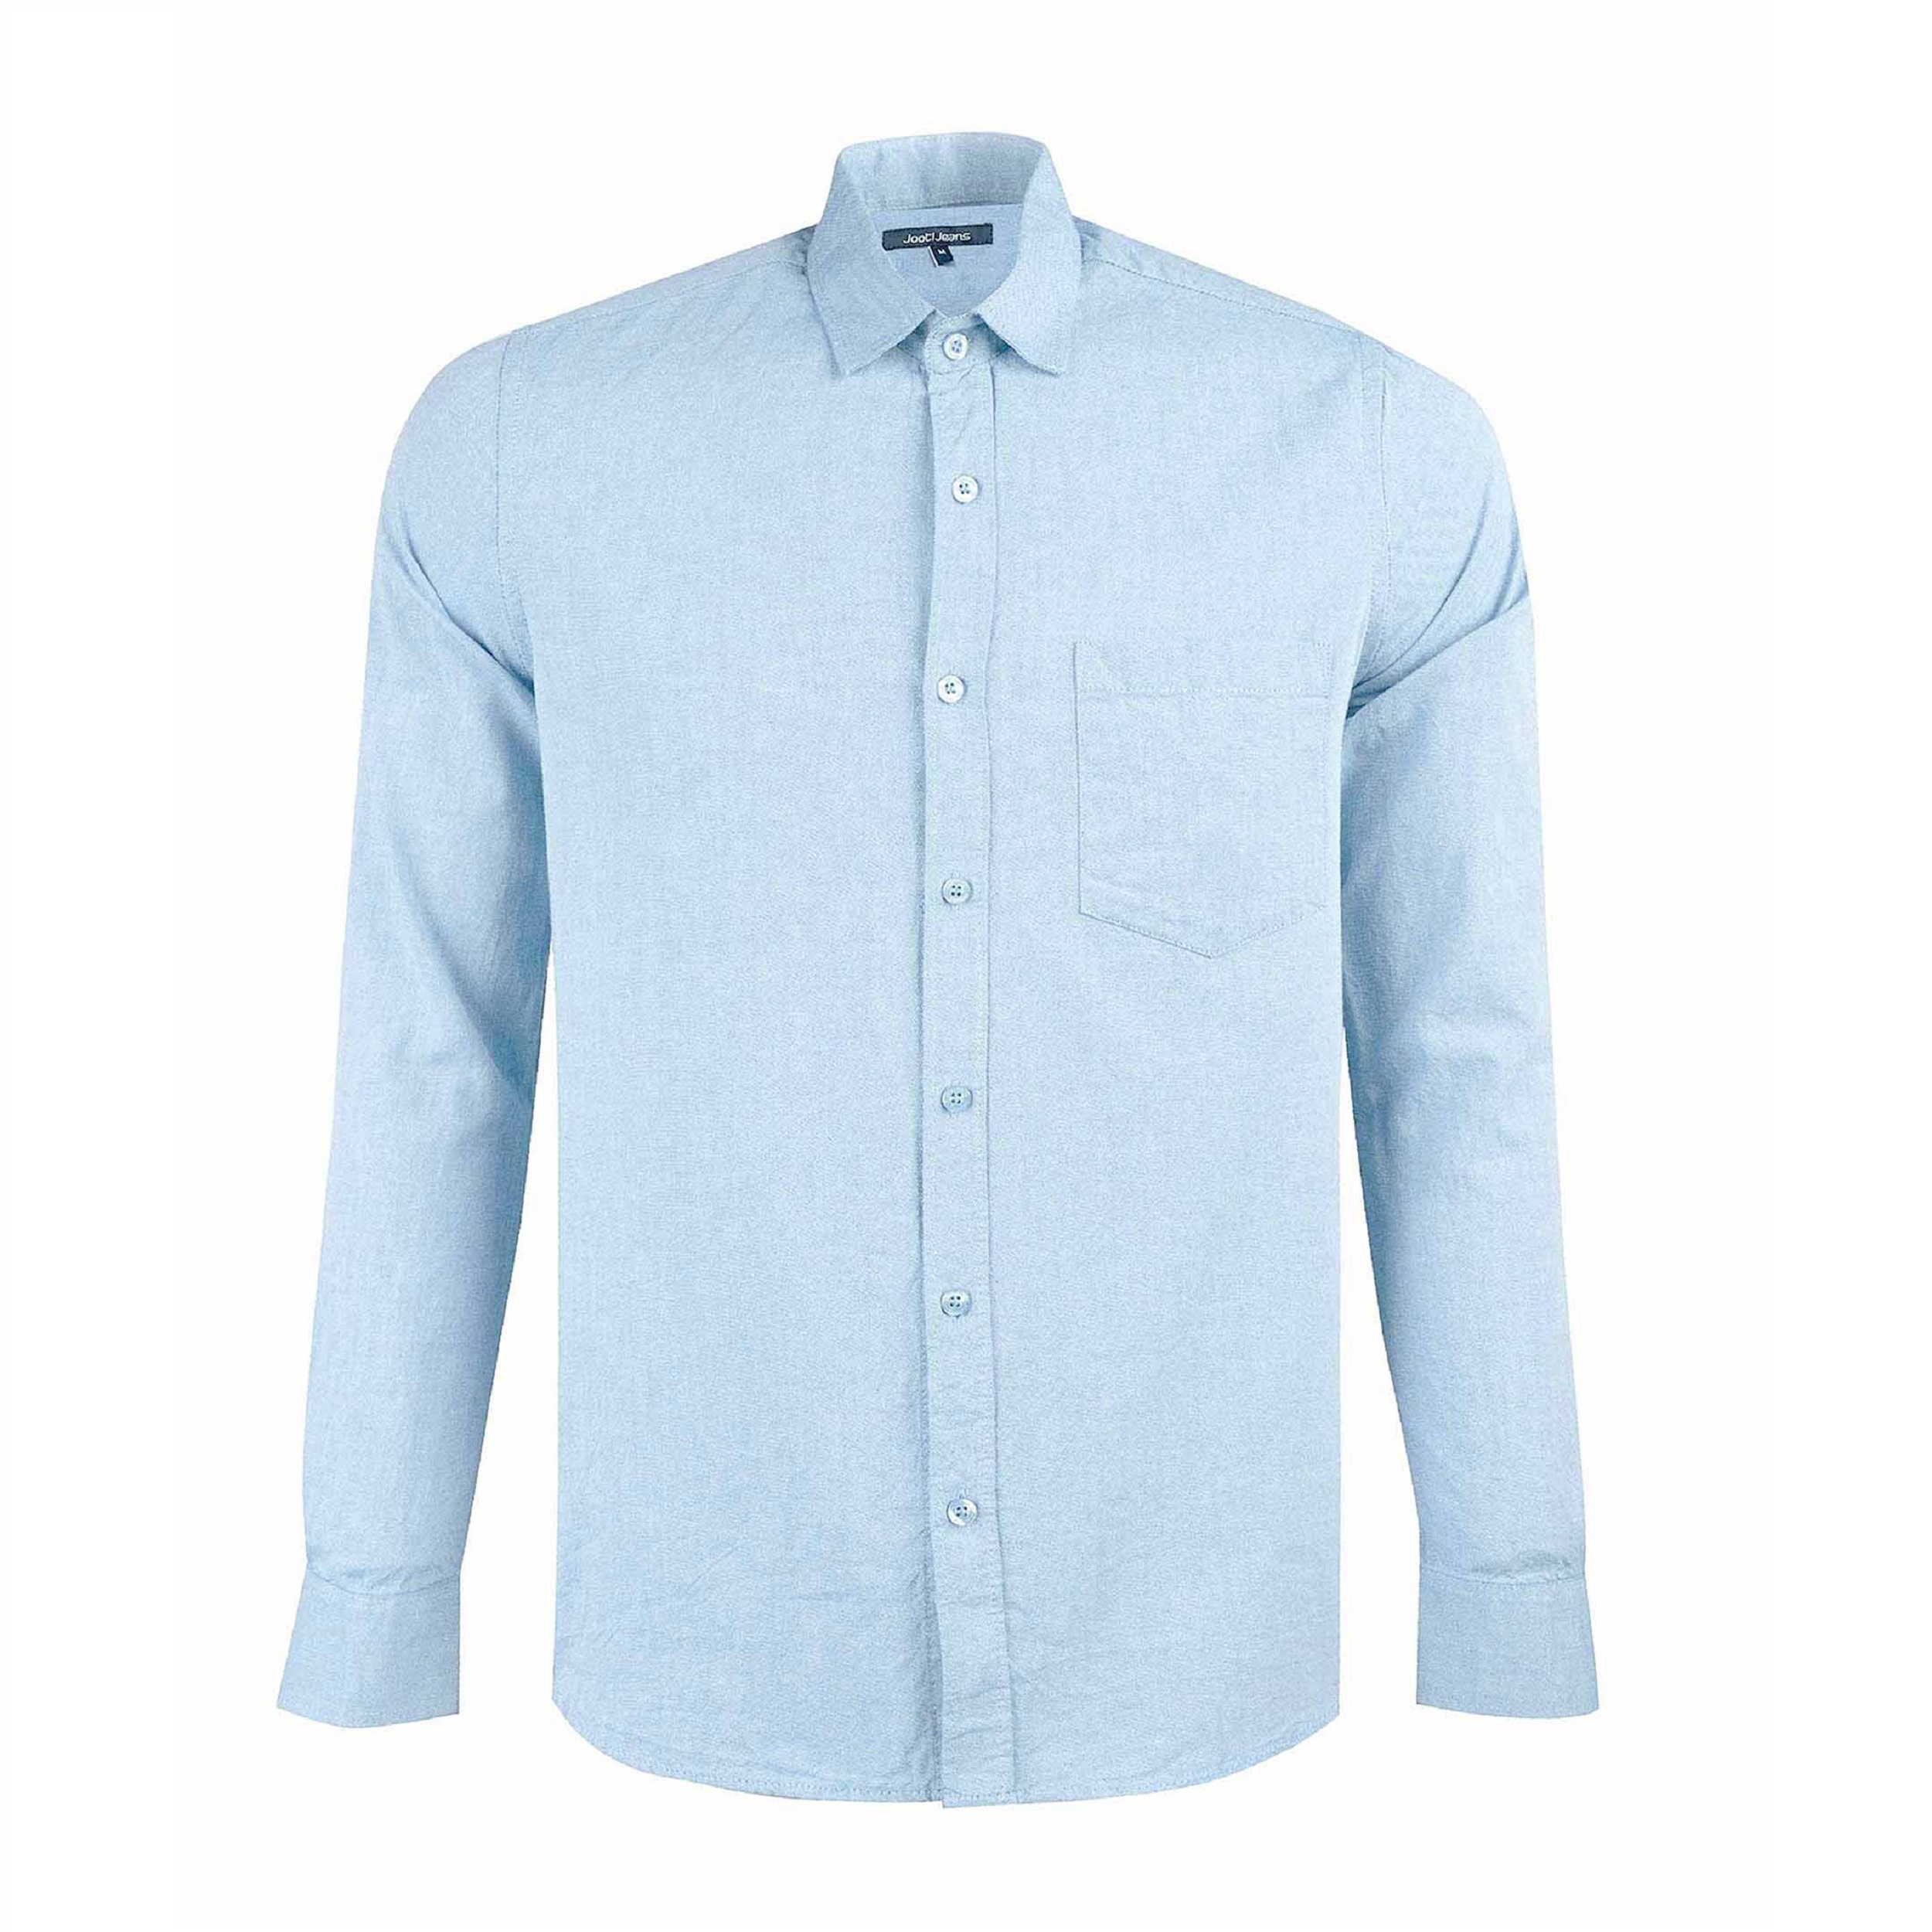 نکته خرید - قیمت روز پیراهن آستین بلند مردانه جوتی جینز مدل ساده کد 30308 رنگ آبی روشن خرید